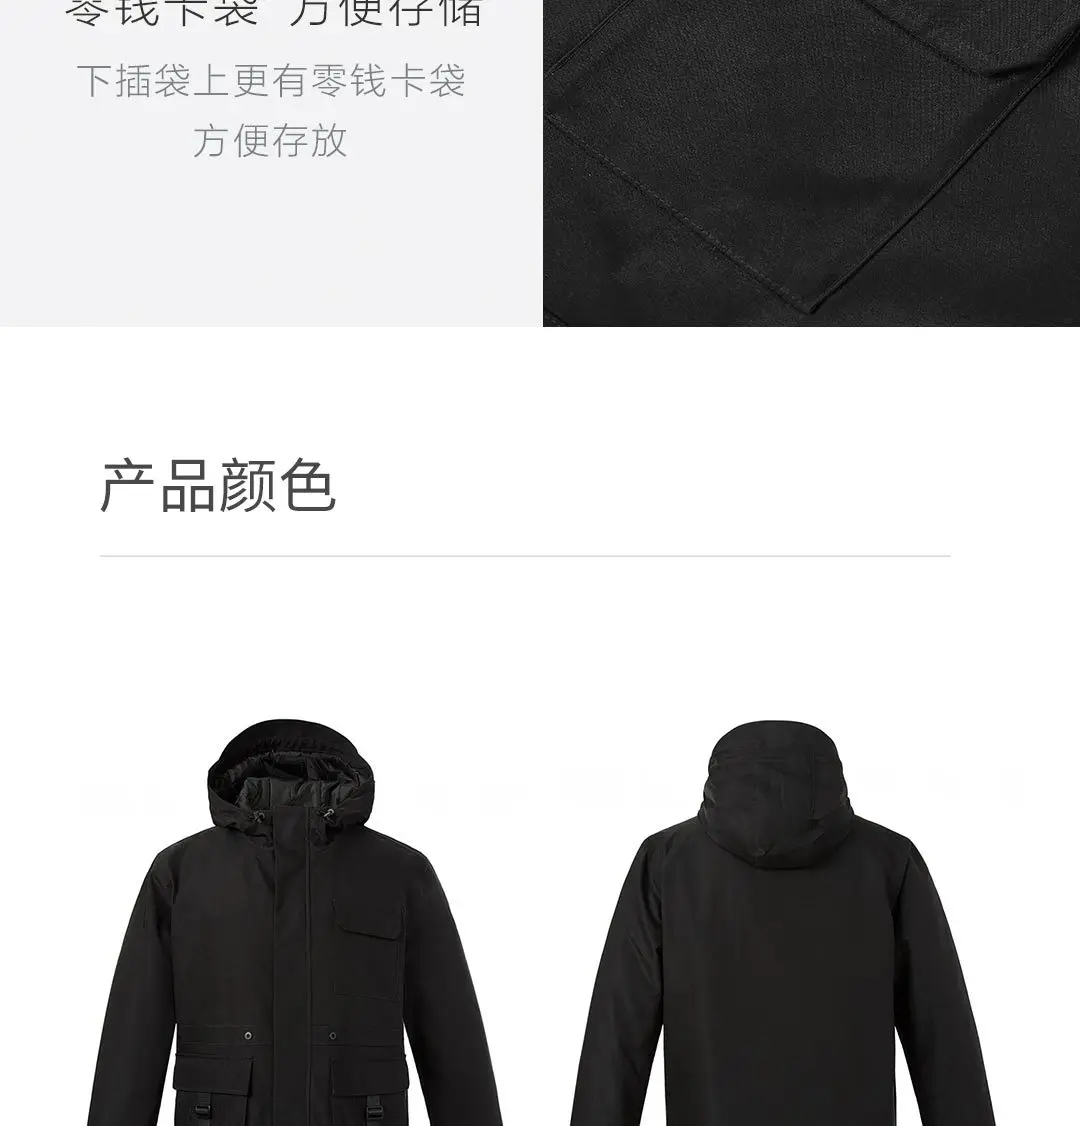 Xiaomi Mijia Youpin Uleemark Мужская оснастка хлопковая куртка оснастка стиль дизайн, 3M теплый бархат, удобная ткань памяти